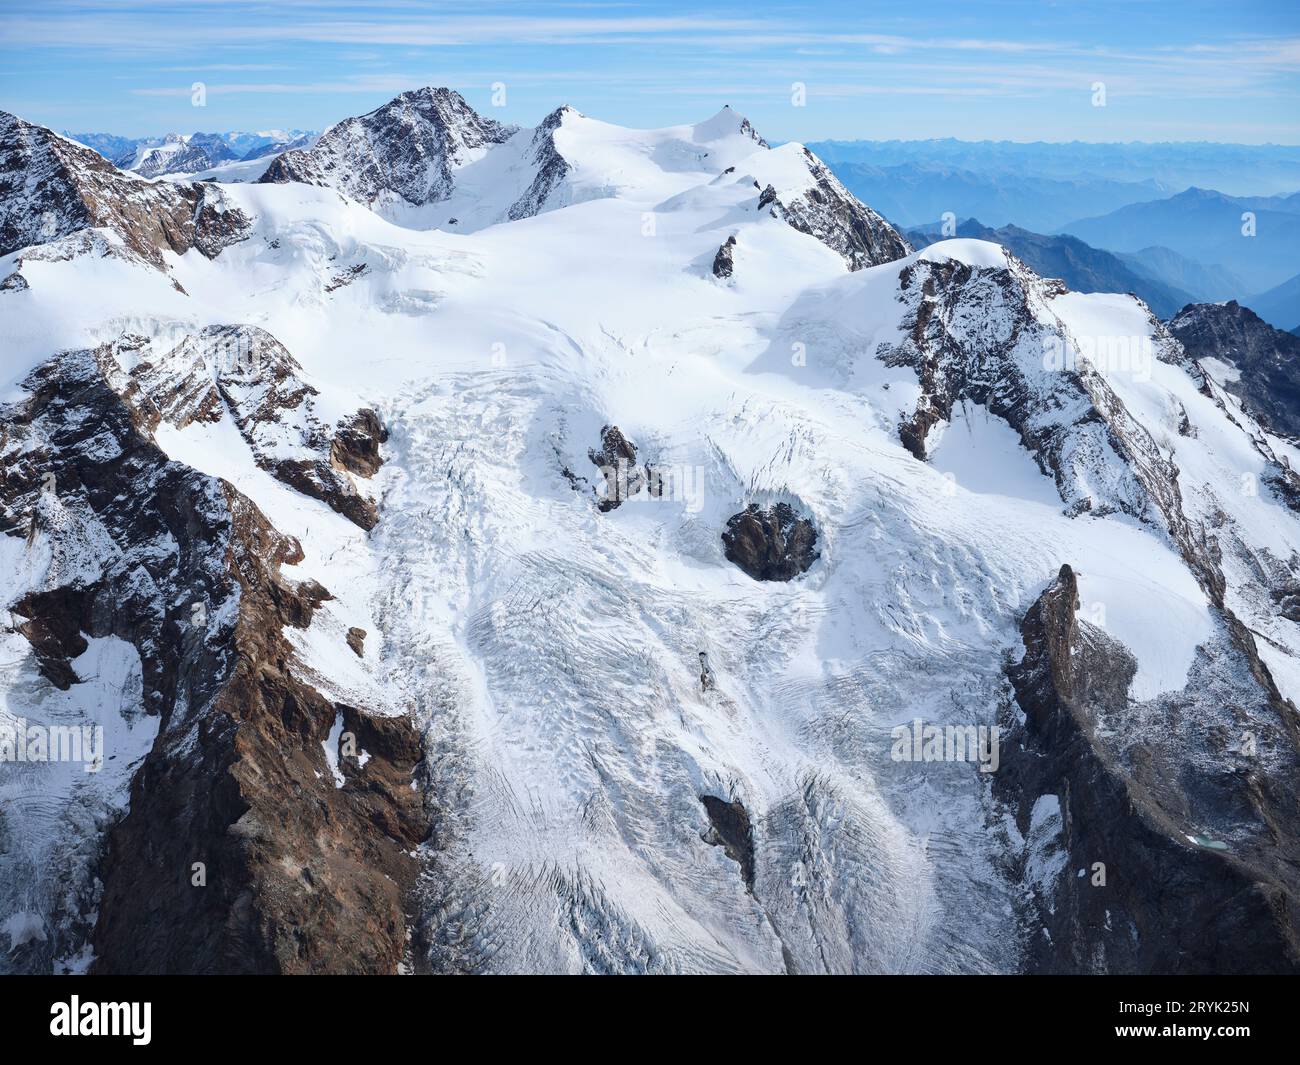 LUFTAUFNAHME. Südliche und italienische Seite des Monte Rosa Massivs mit dem Lys-Gletscher im oberen Lys-Tal. Aosta Valley, Italien. Stockfoto